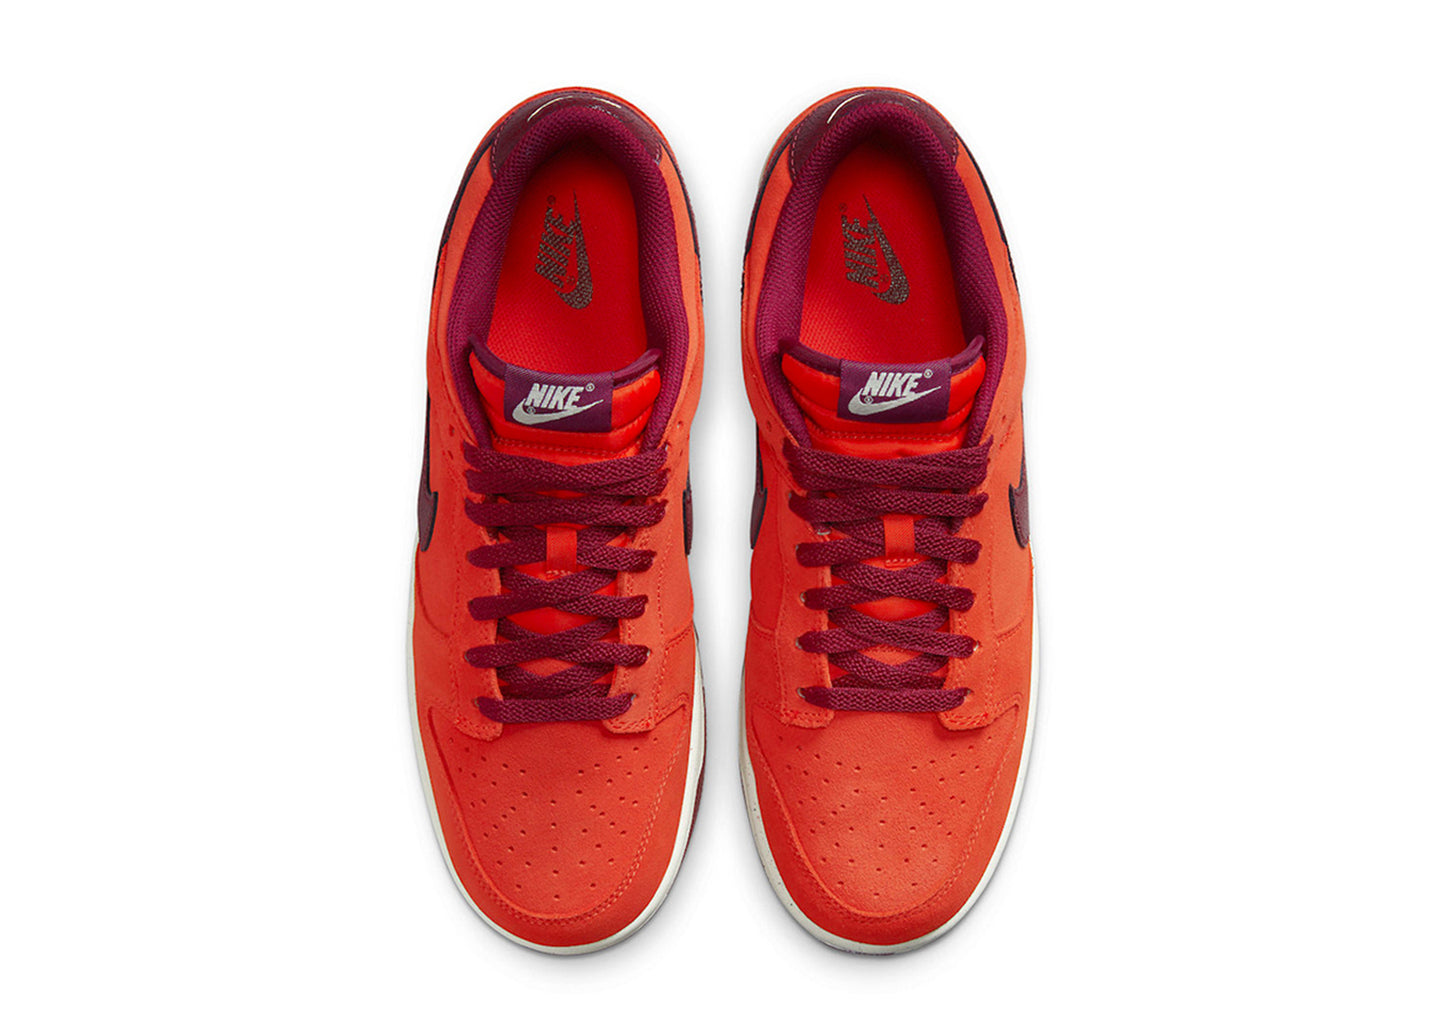 Nike Dunk Low Premium "Orange Suede"